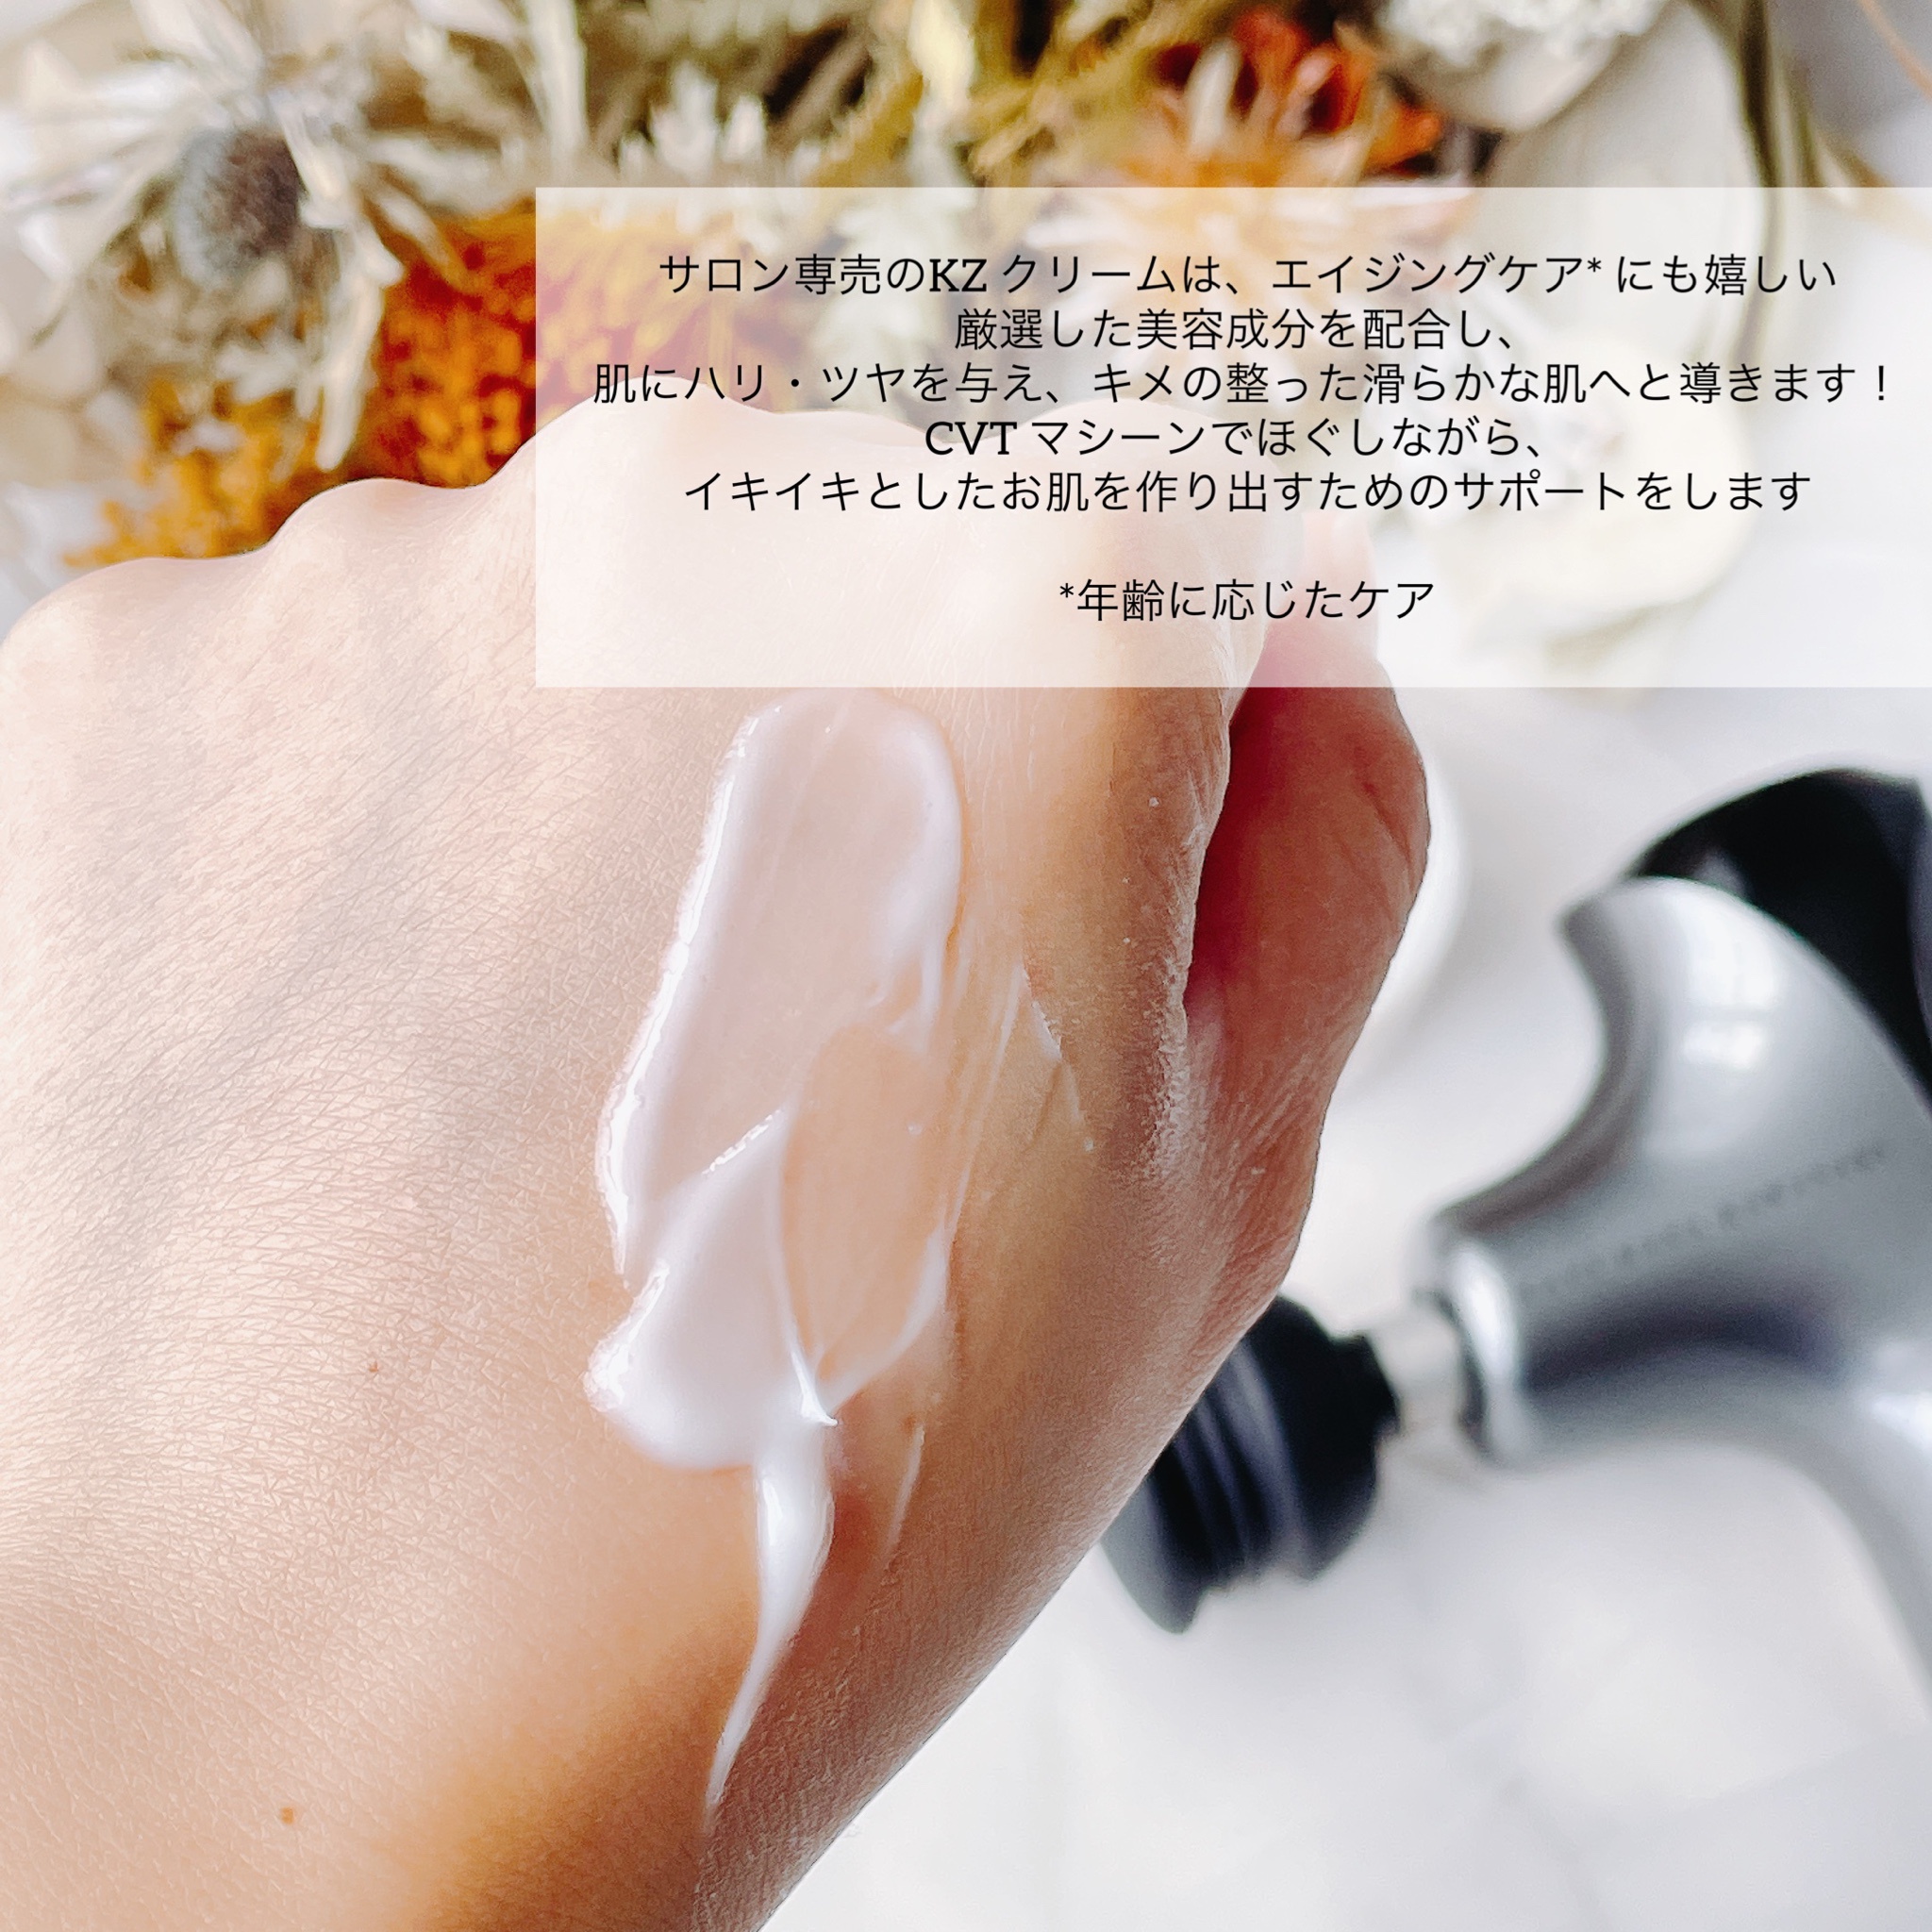 RENPHO / KAZUMASA KAWASAKI CVT バンドル (30gクリーム)の公式商品 